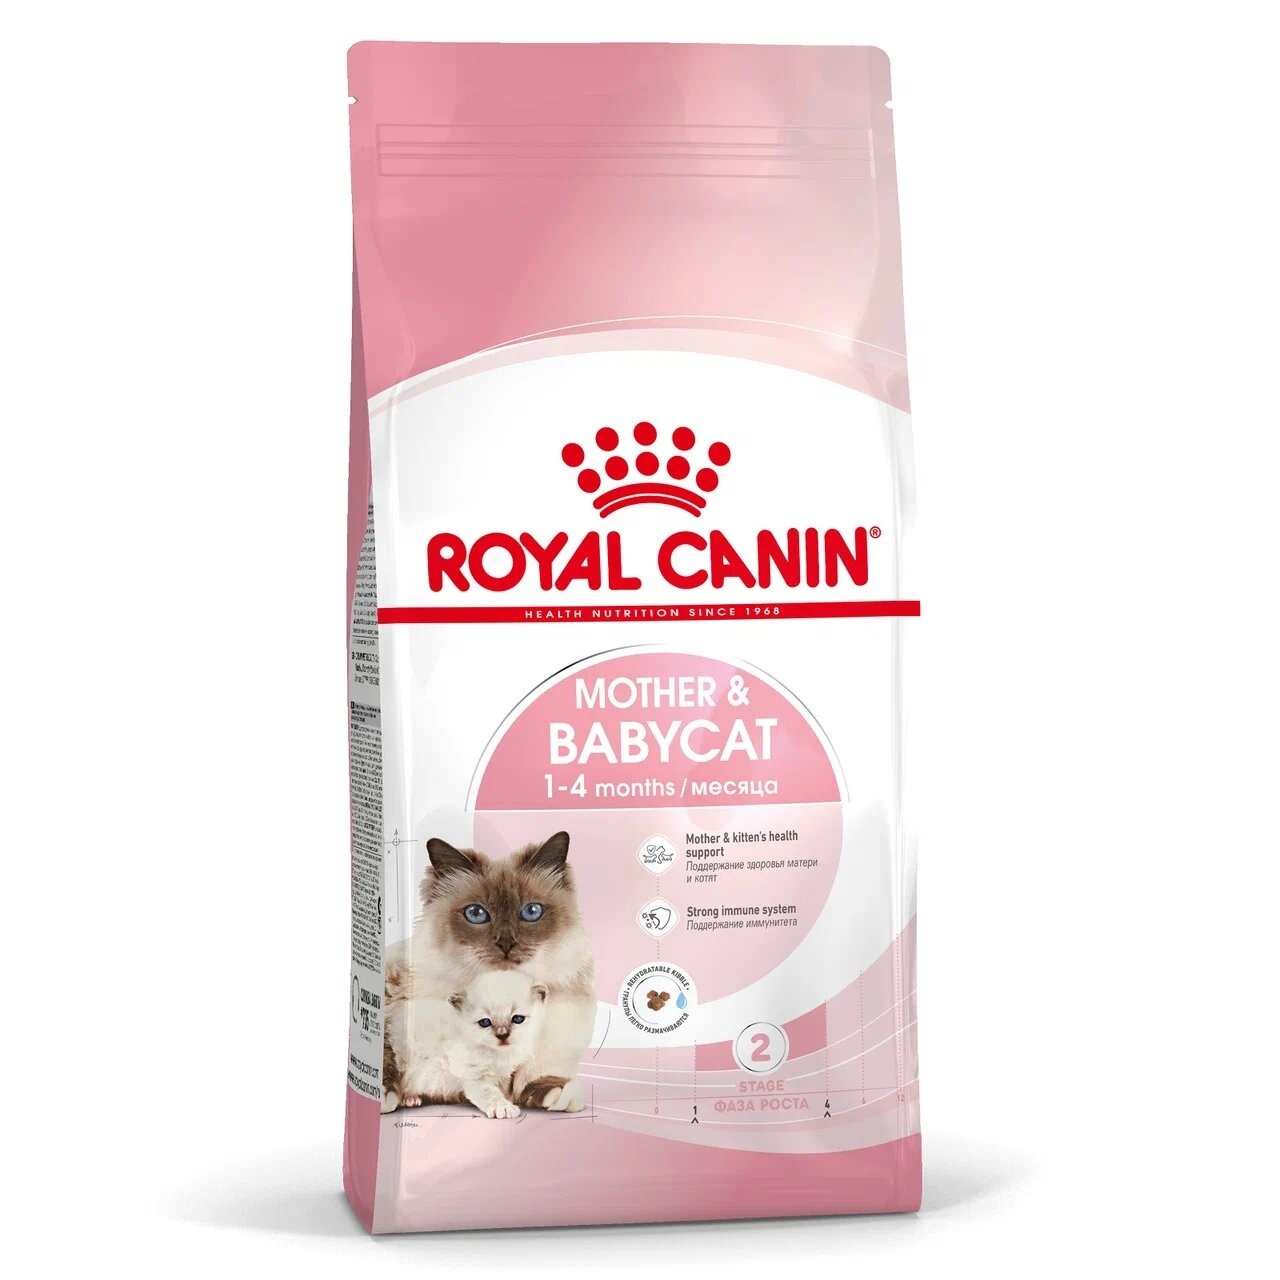 Royal Canin Корм Royal Canin корм для котят 1-4 месяцев и для беременных/лактирующих кошек (2 кг) 22948